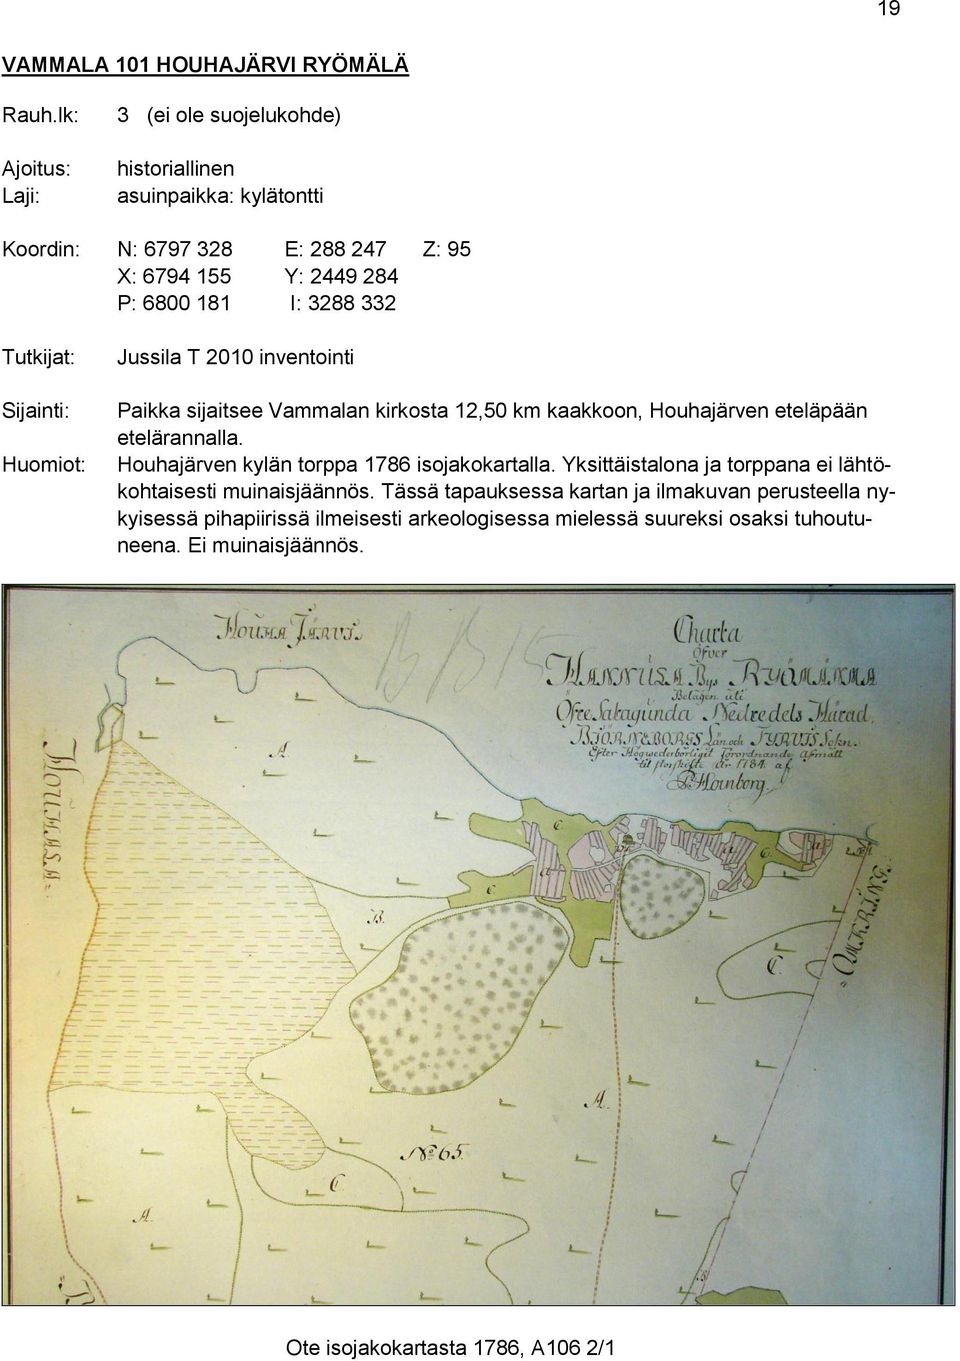 332 Tutkijat: Sijainti: Huomiot: Jussila T 2010 inventointi Paikka sijaitsee Vammalan kirkosta 12,50 km kaakkoon, Houhajärven eteläpään etelärannalla.